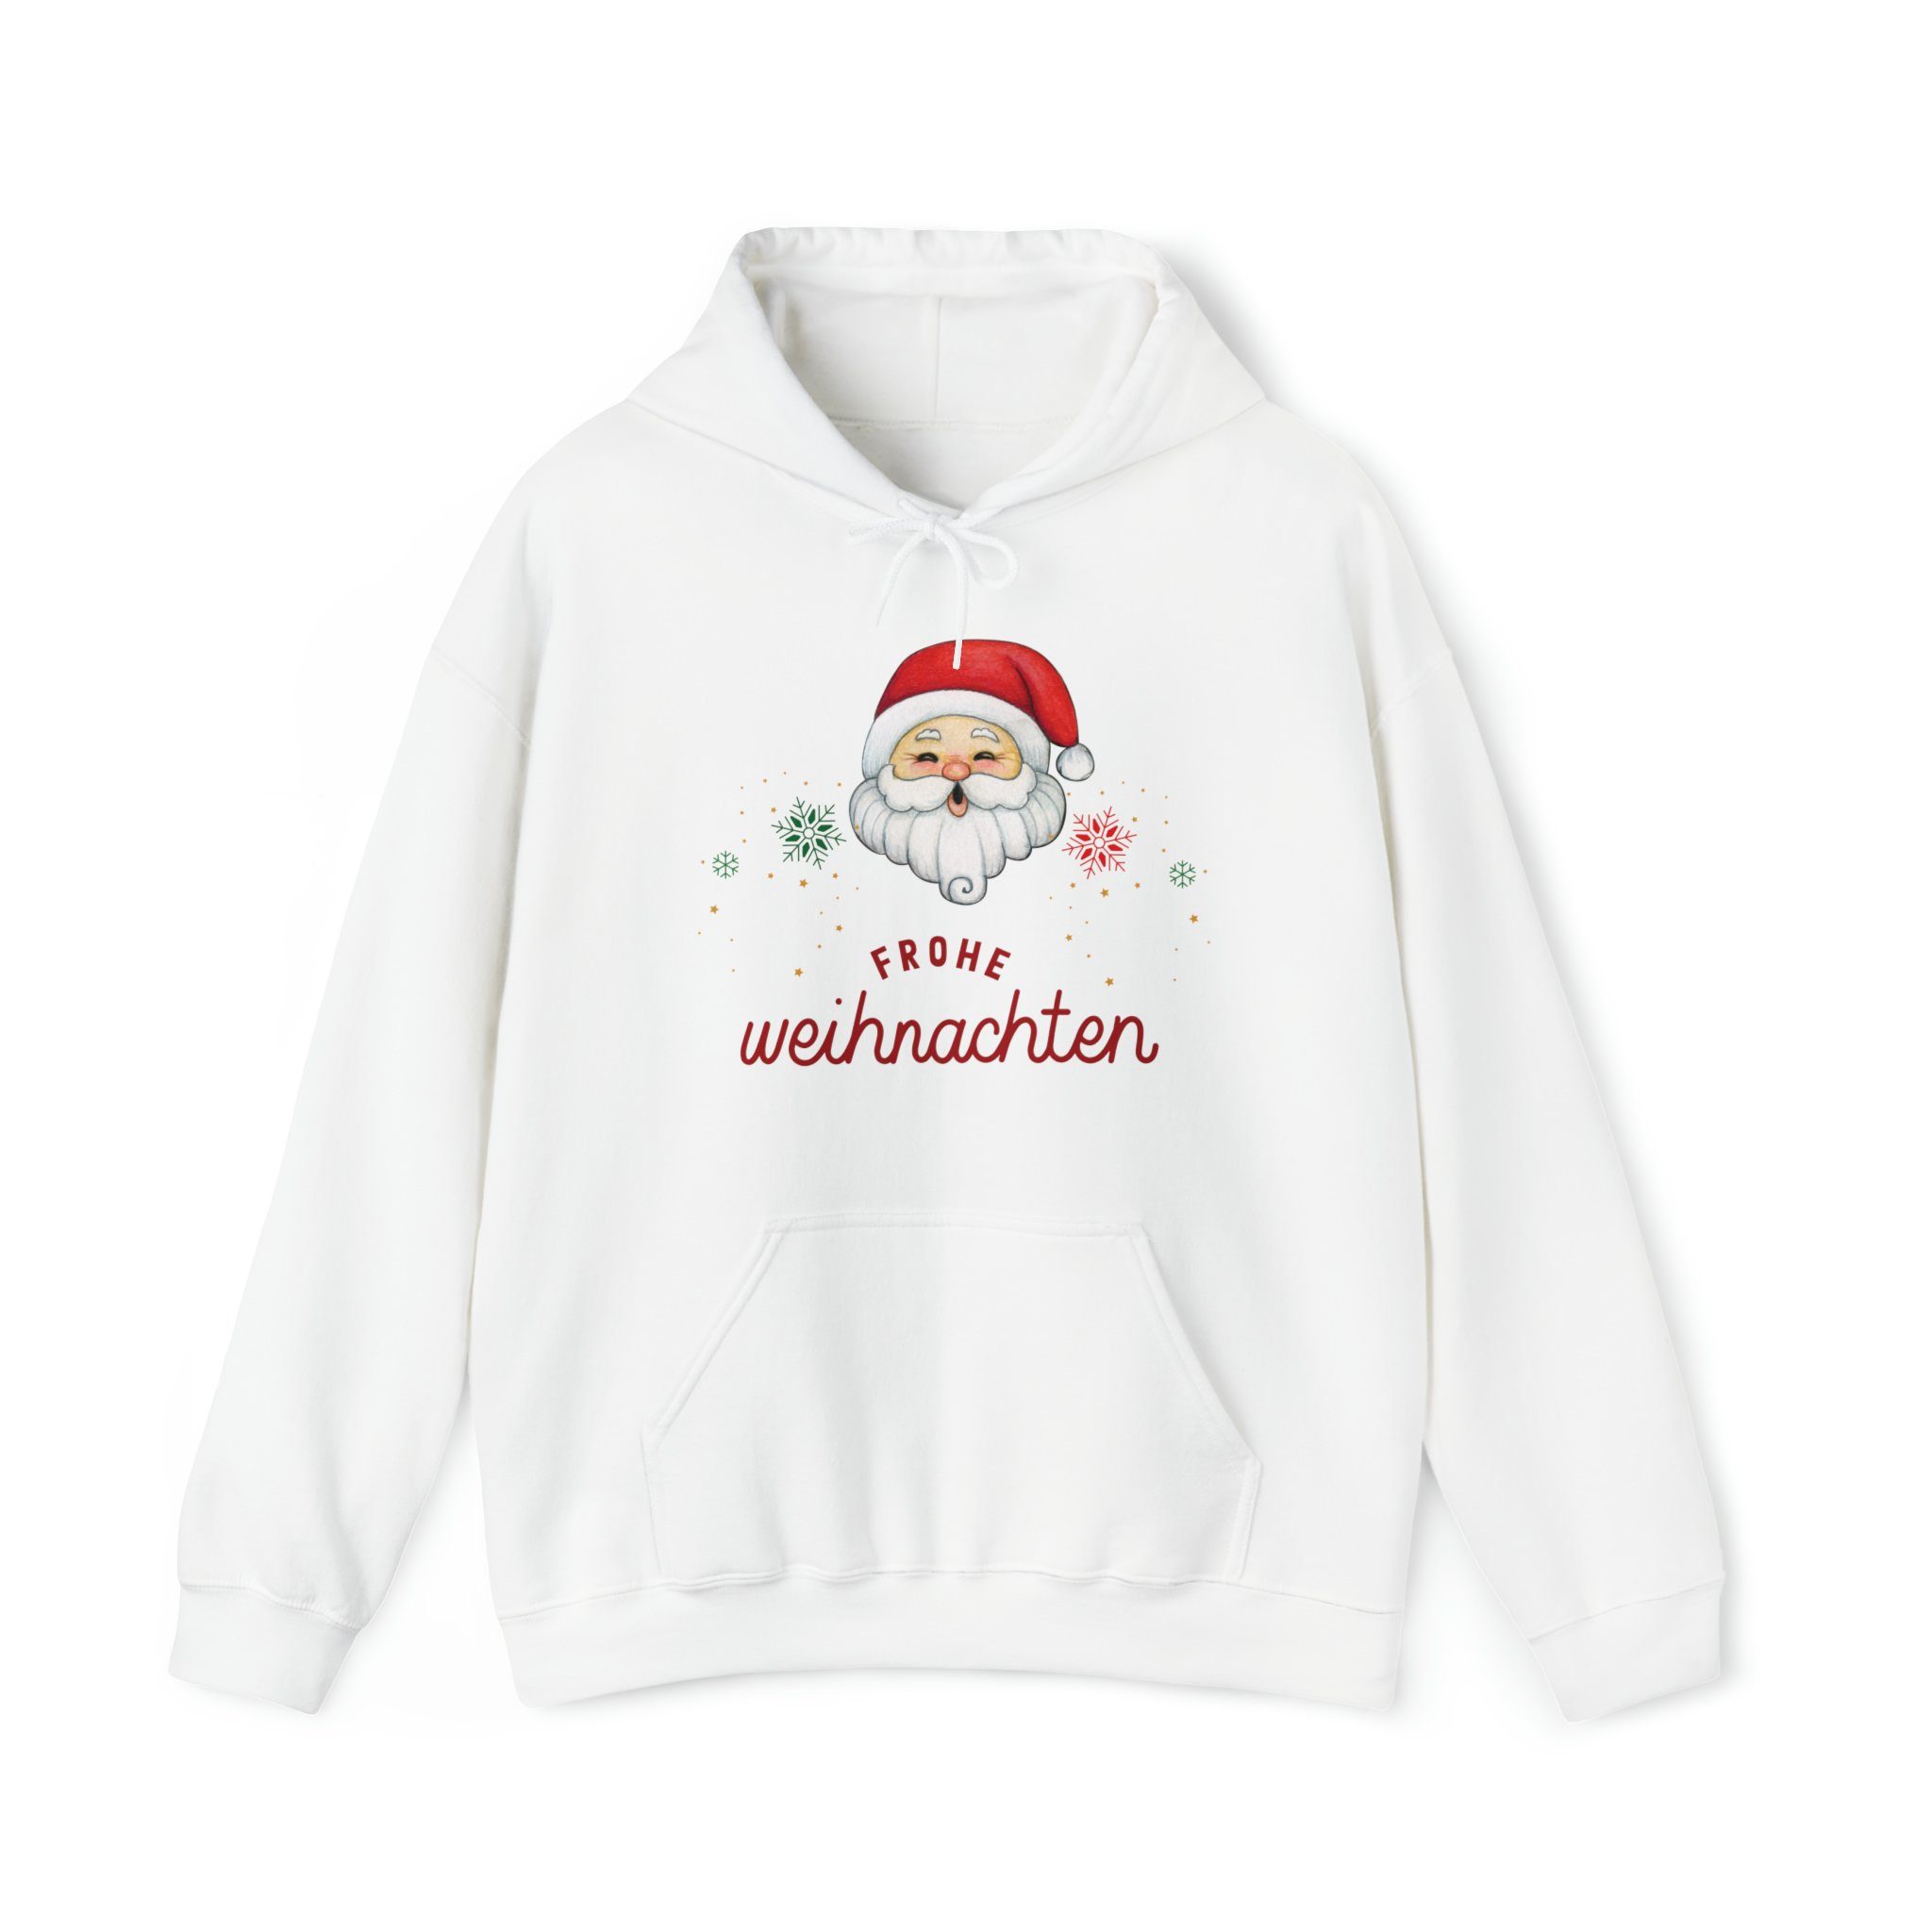 Weihnachtssweatshirt Christmas Christmas Men Women Merry Quality Sweatshirt Hoodie, White Elegance Santa